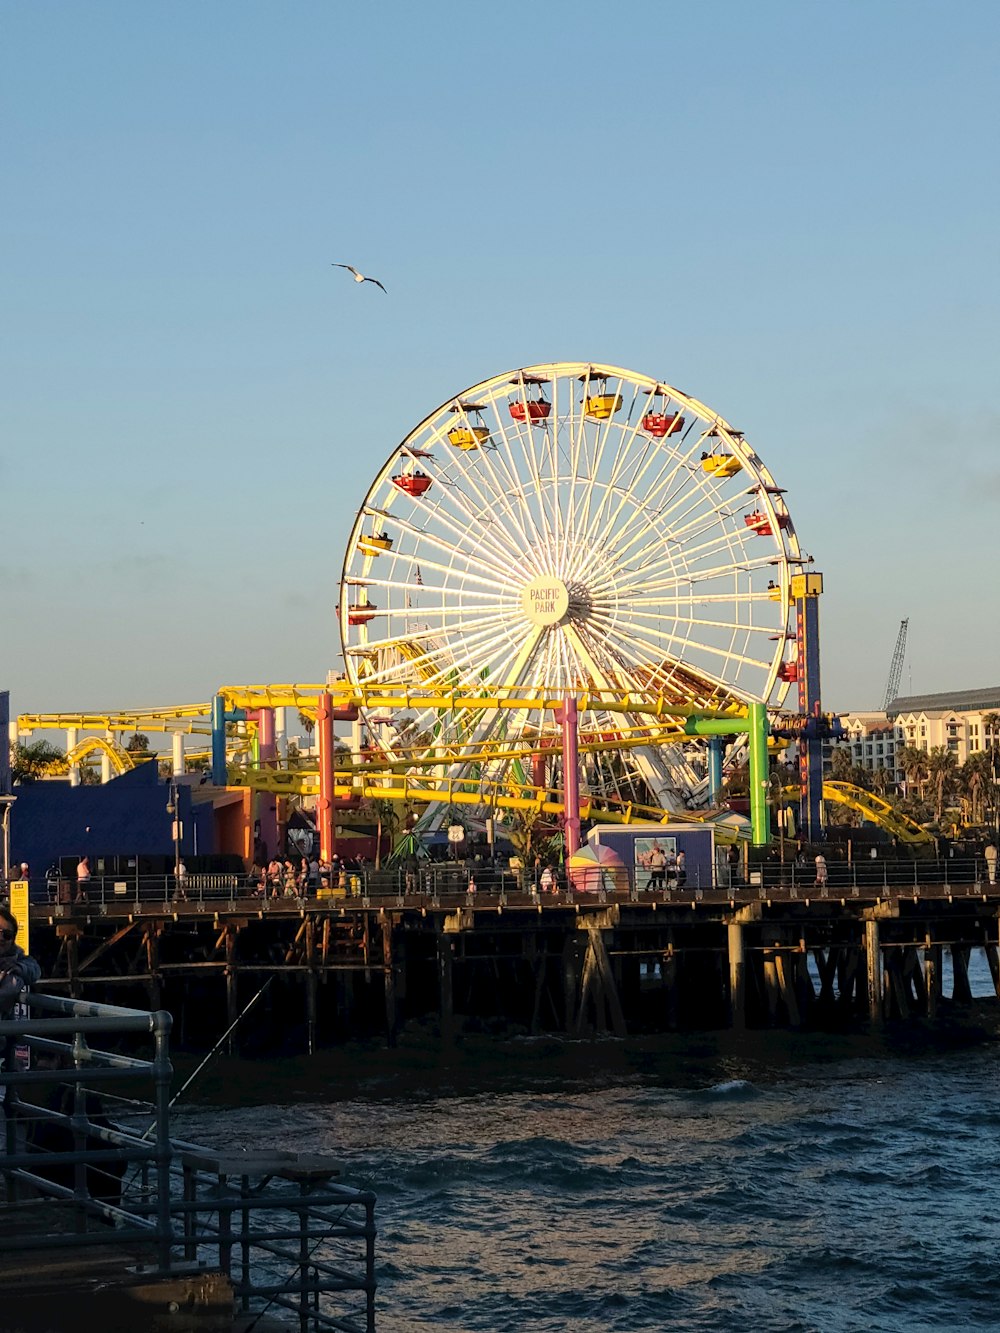 Ein Riesenrad, das auf einem Pier neben dem Meer sitzt